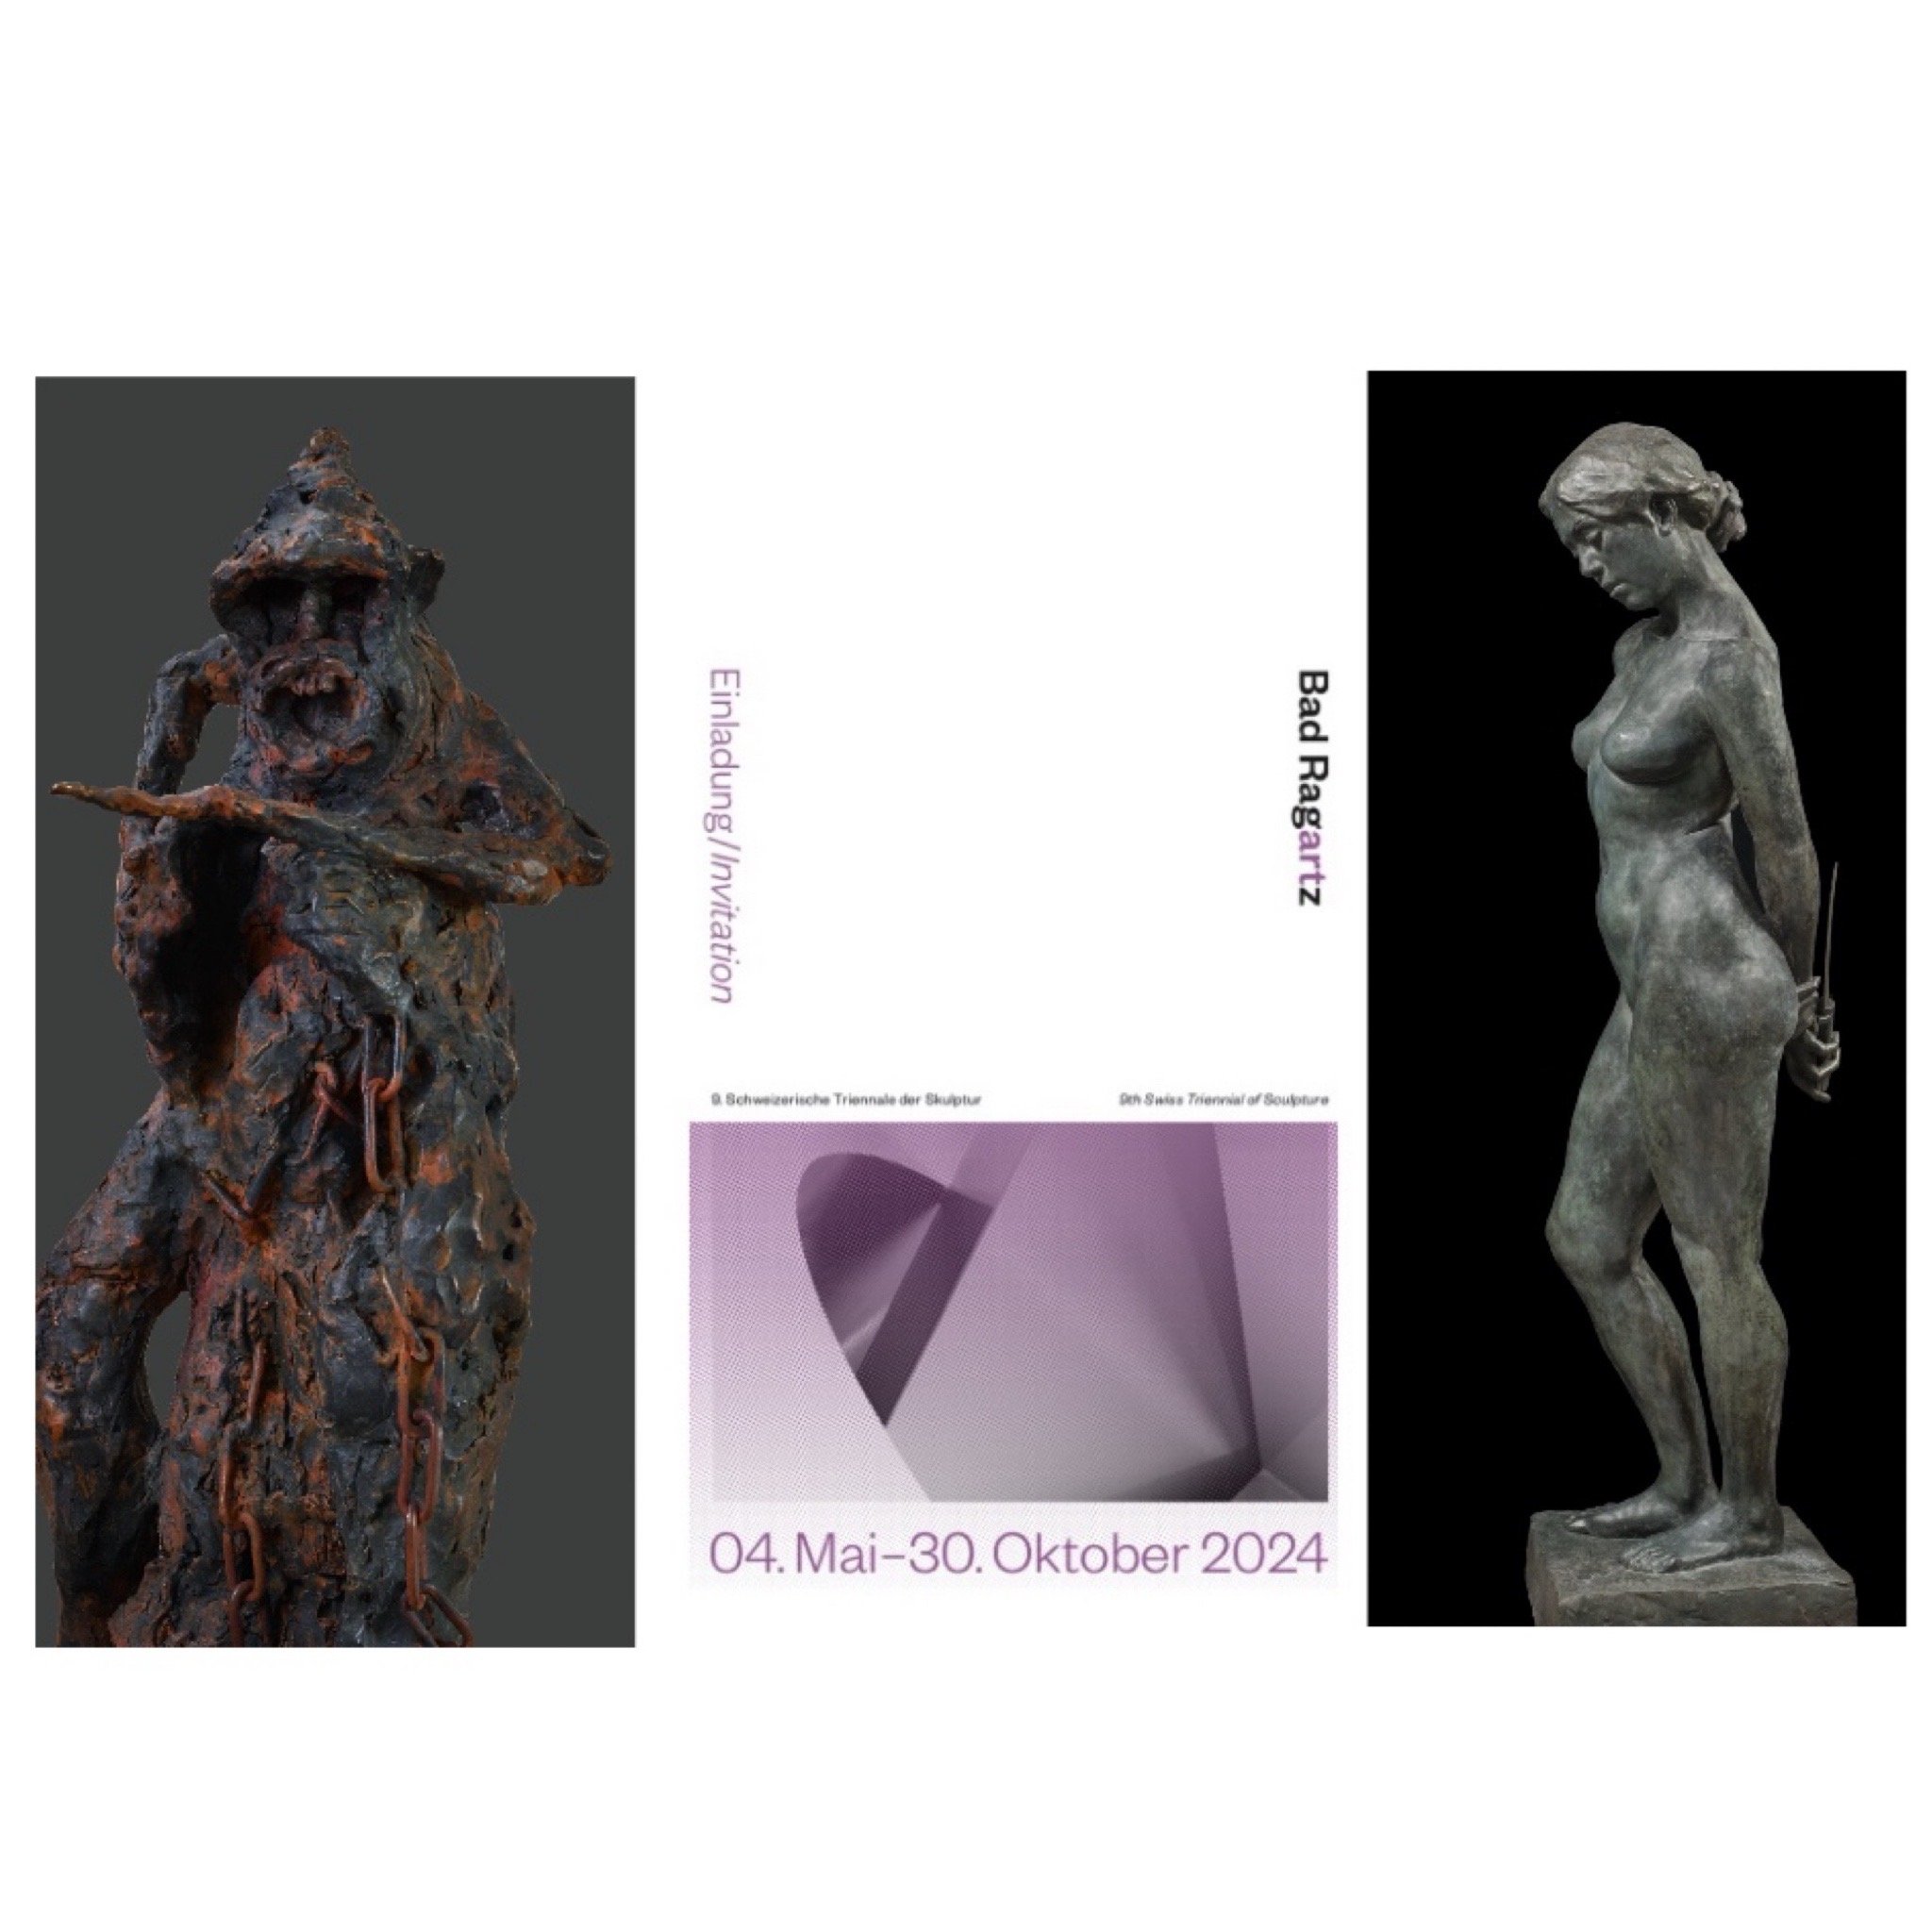 7 Dr Gindi - 9th Triennial of Sculpture Bad Ragaz 2024.JPG